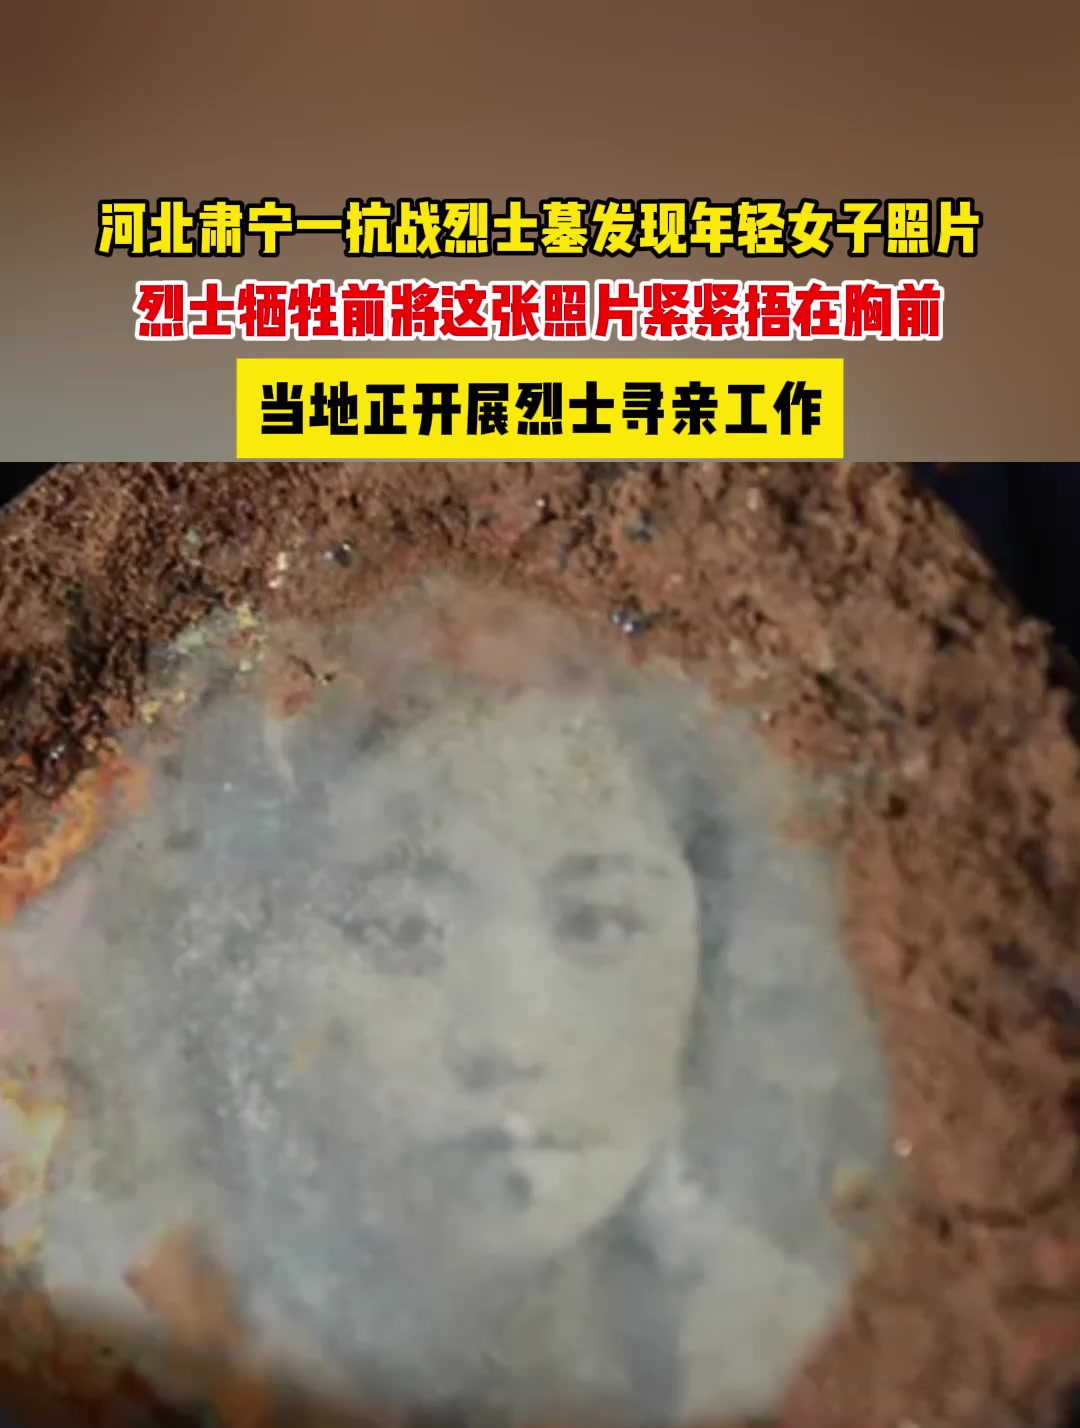 河北肃宁一抗战烈士墓发现年轻女子照片